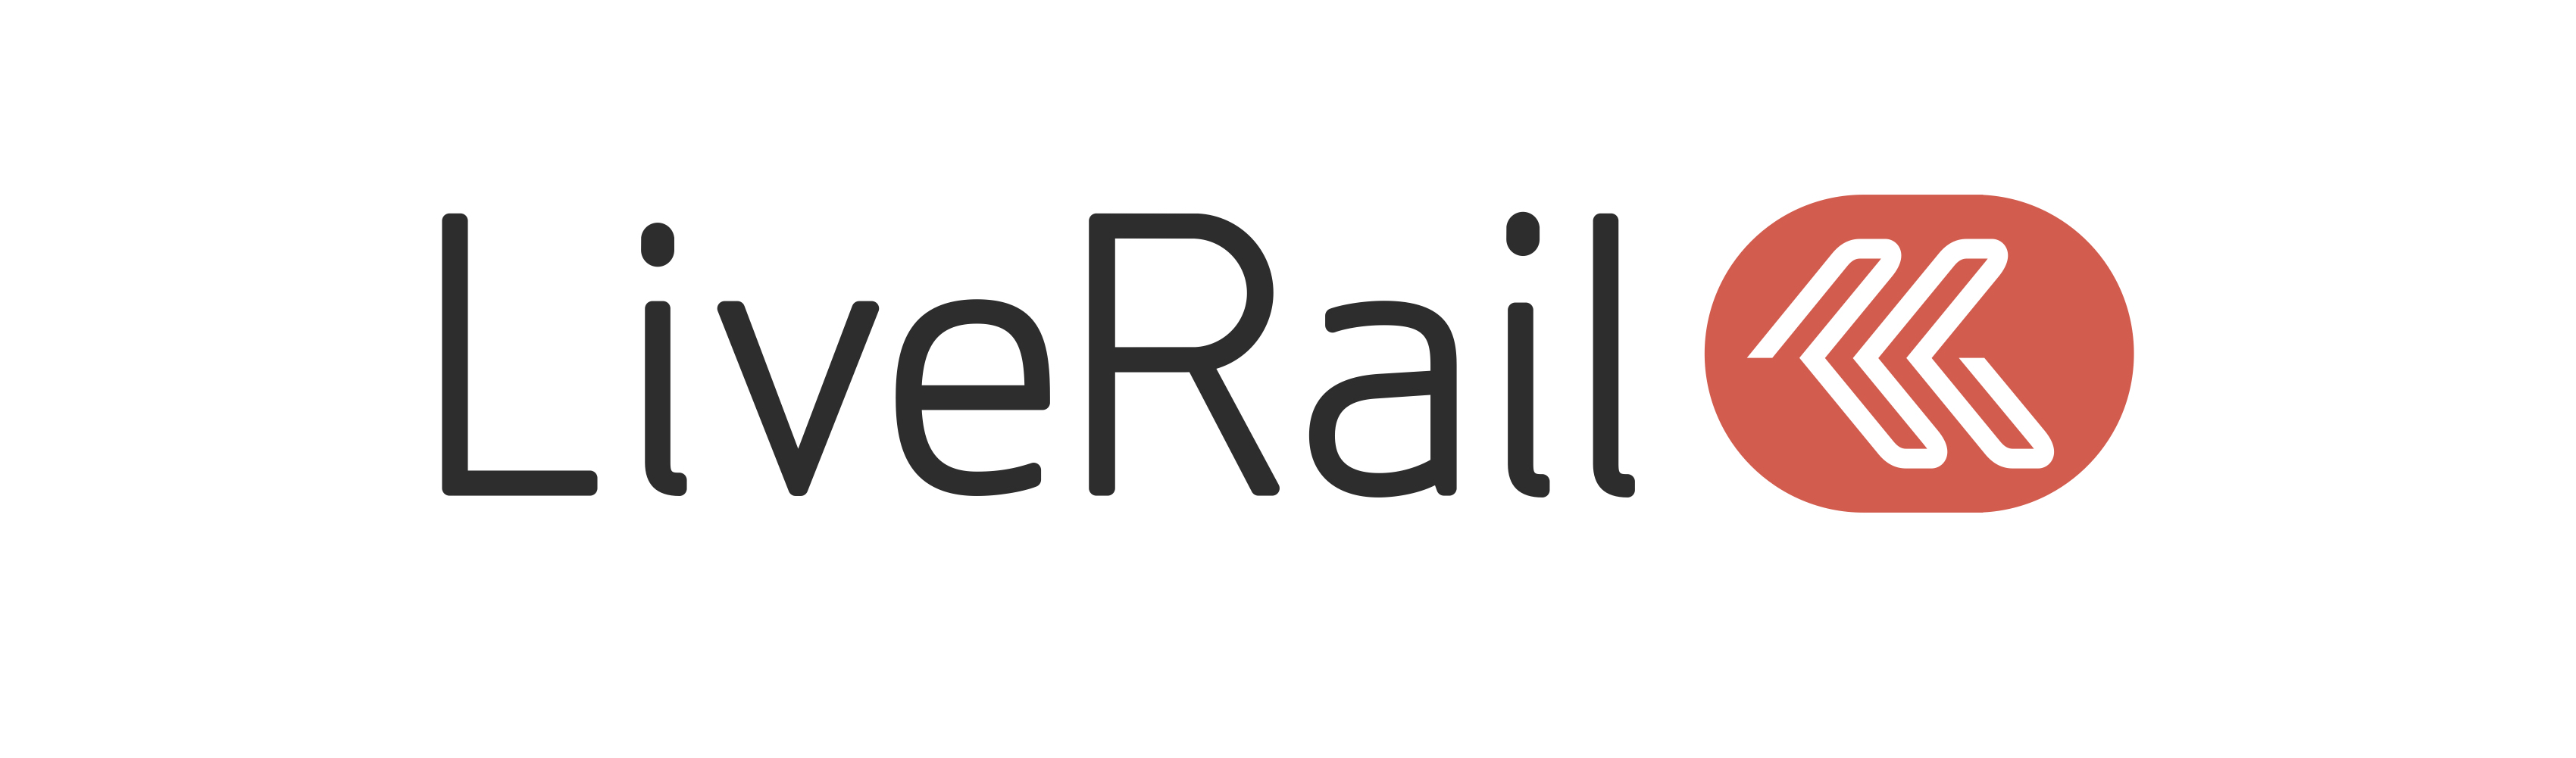 LiveRail-Company-logo-vector-AI-primary-container